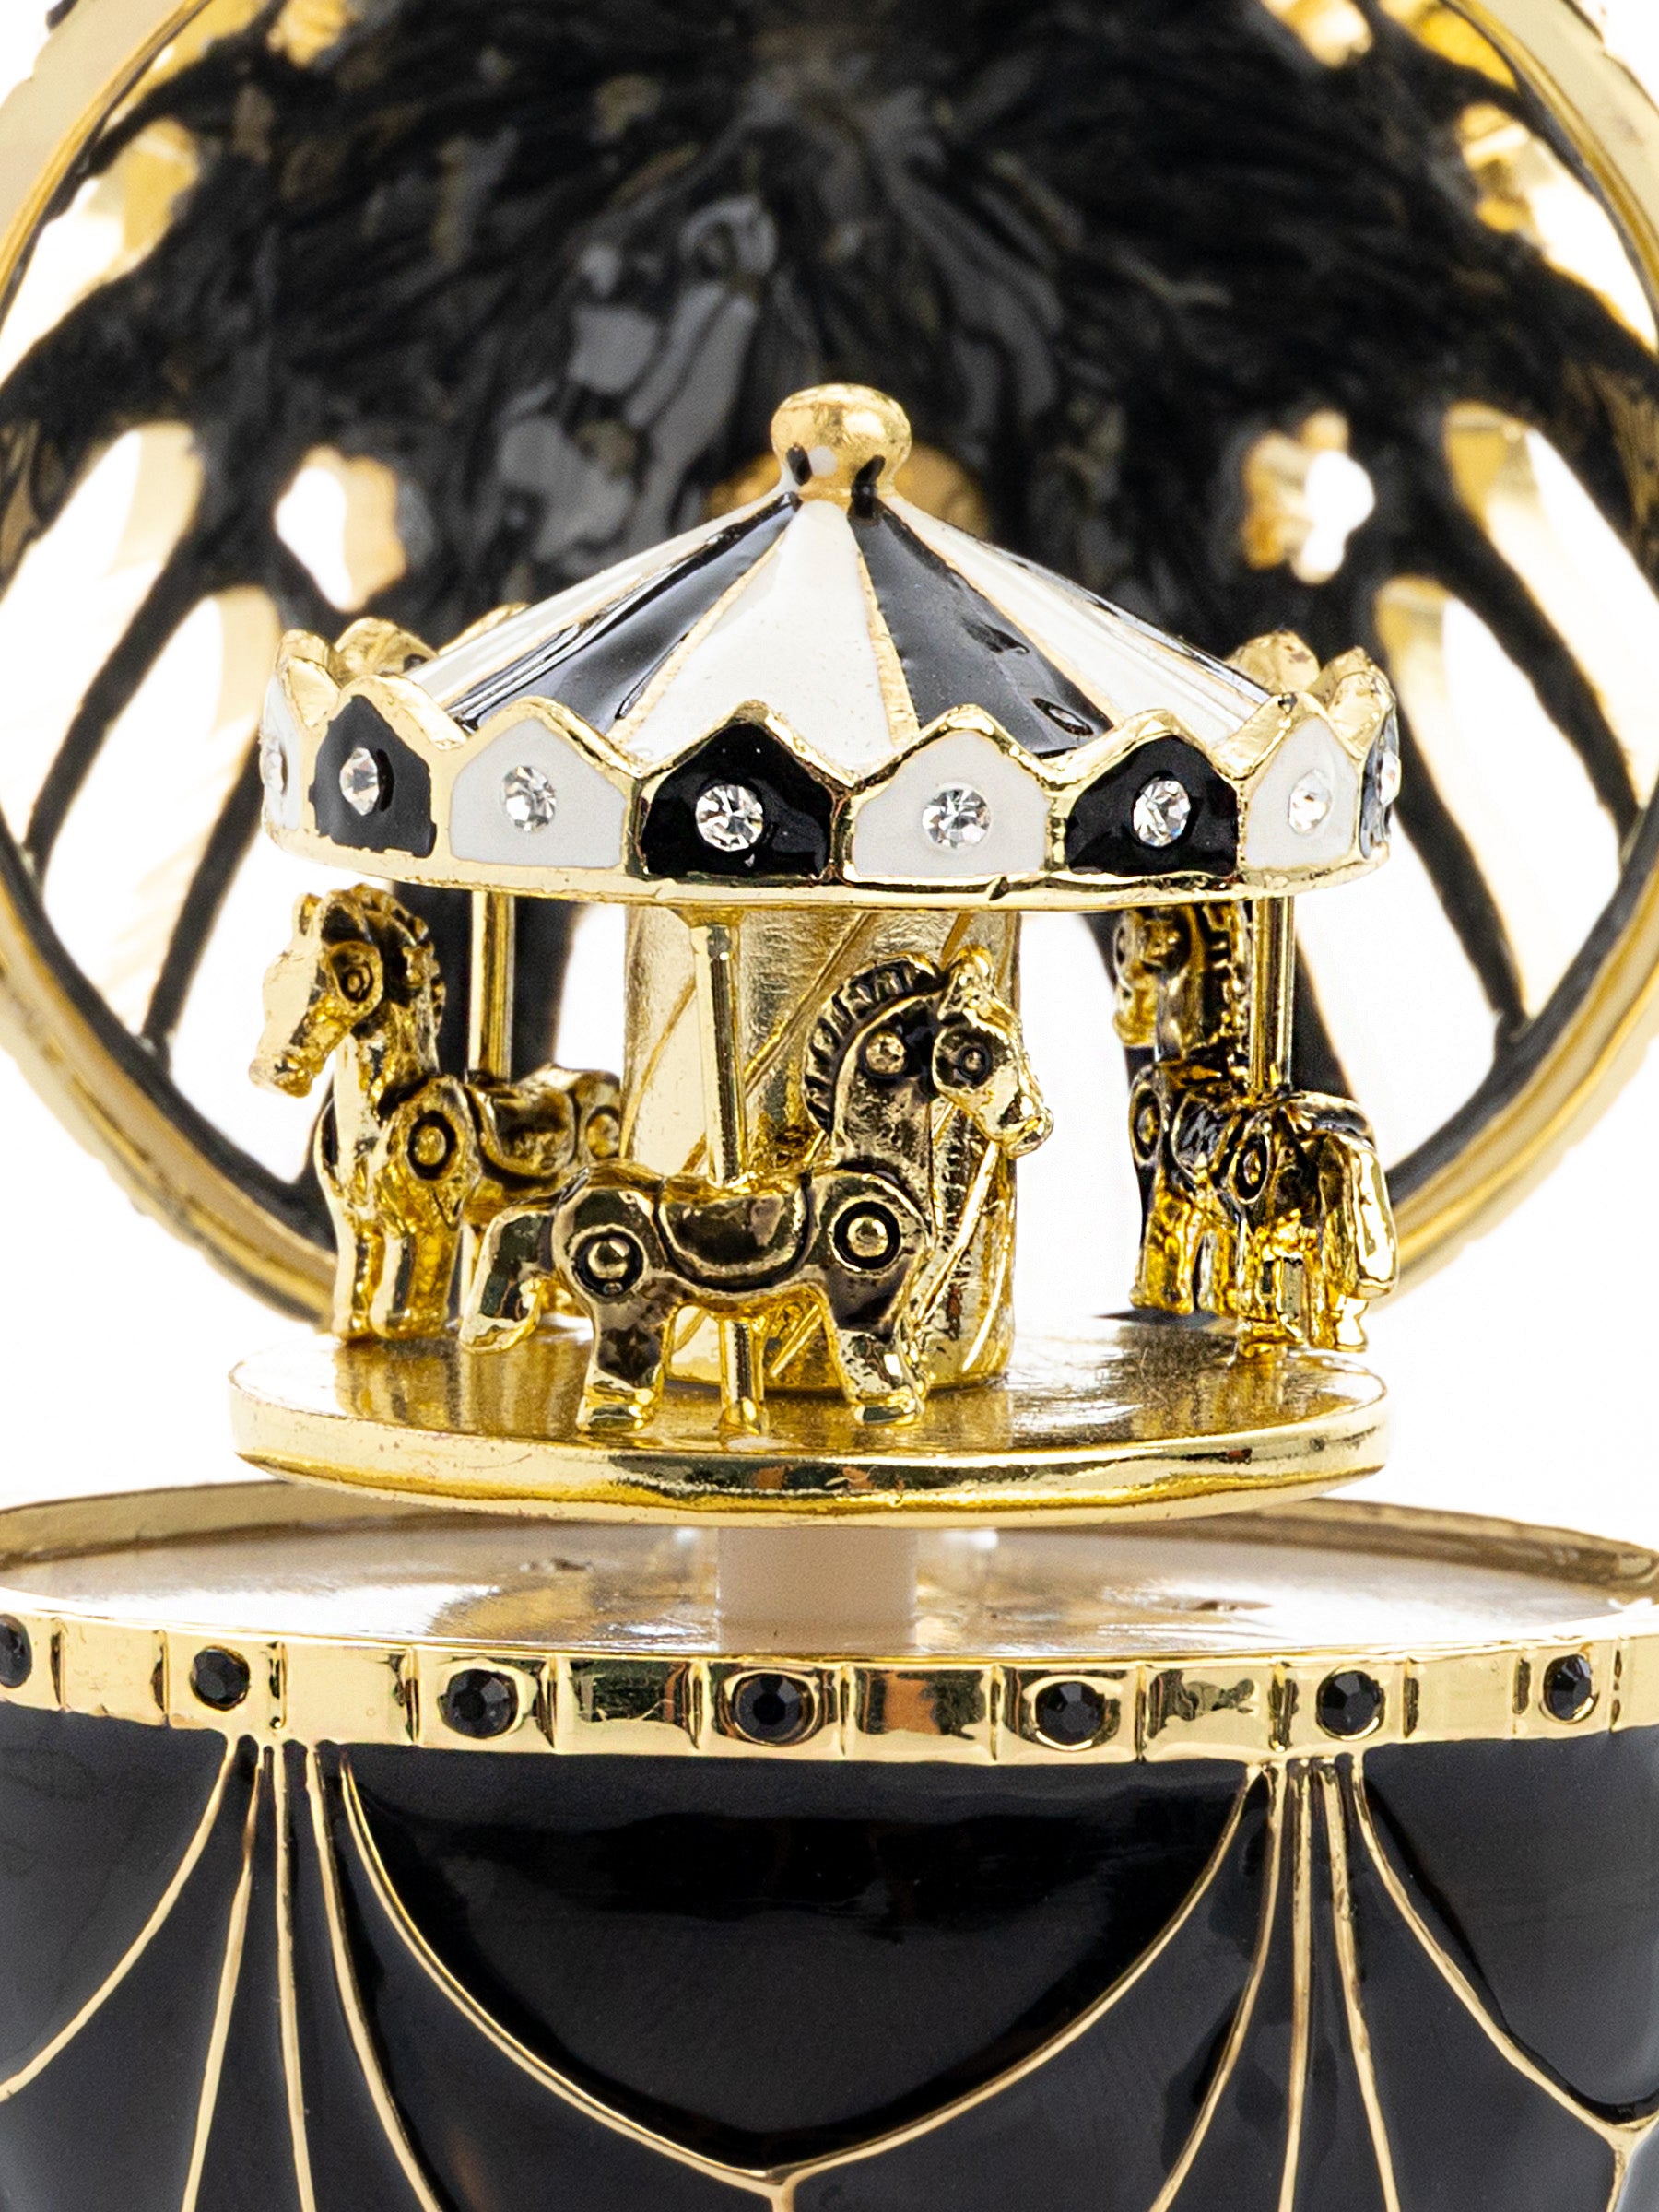 Oeuf de Fabergé noir et doré avec surprise de carrousel à chevaux à l'intérieur